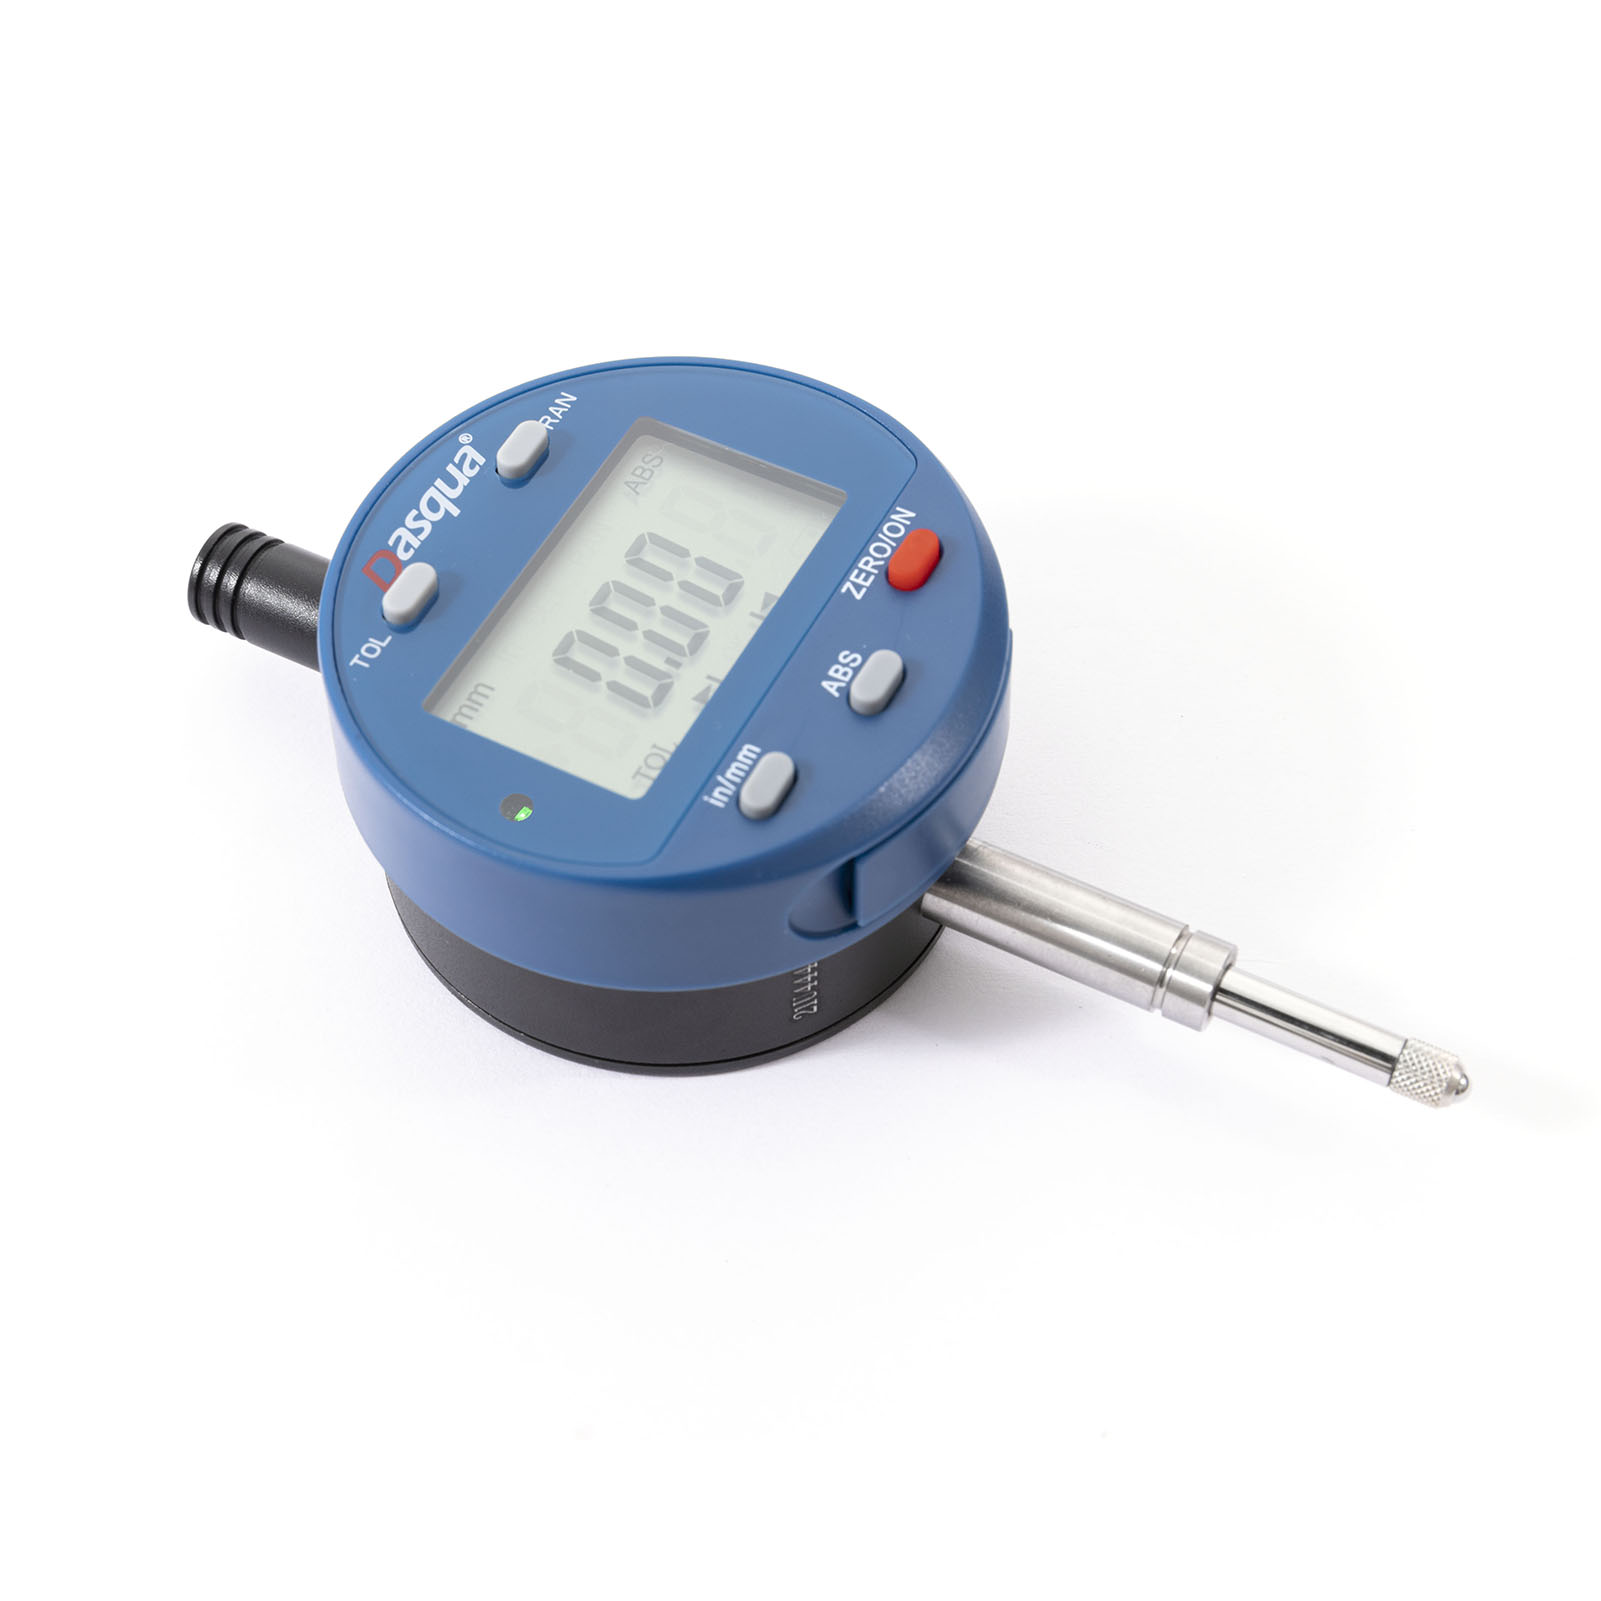 DASQUA Indicador de dial digital electrónico multifuncional Medidor de calibre Pulgada/Conversión métrica 0-1 pulgada/25,4 mm Herramienta de medición 5260-3705